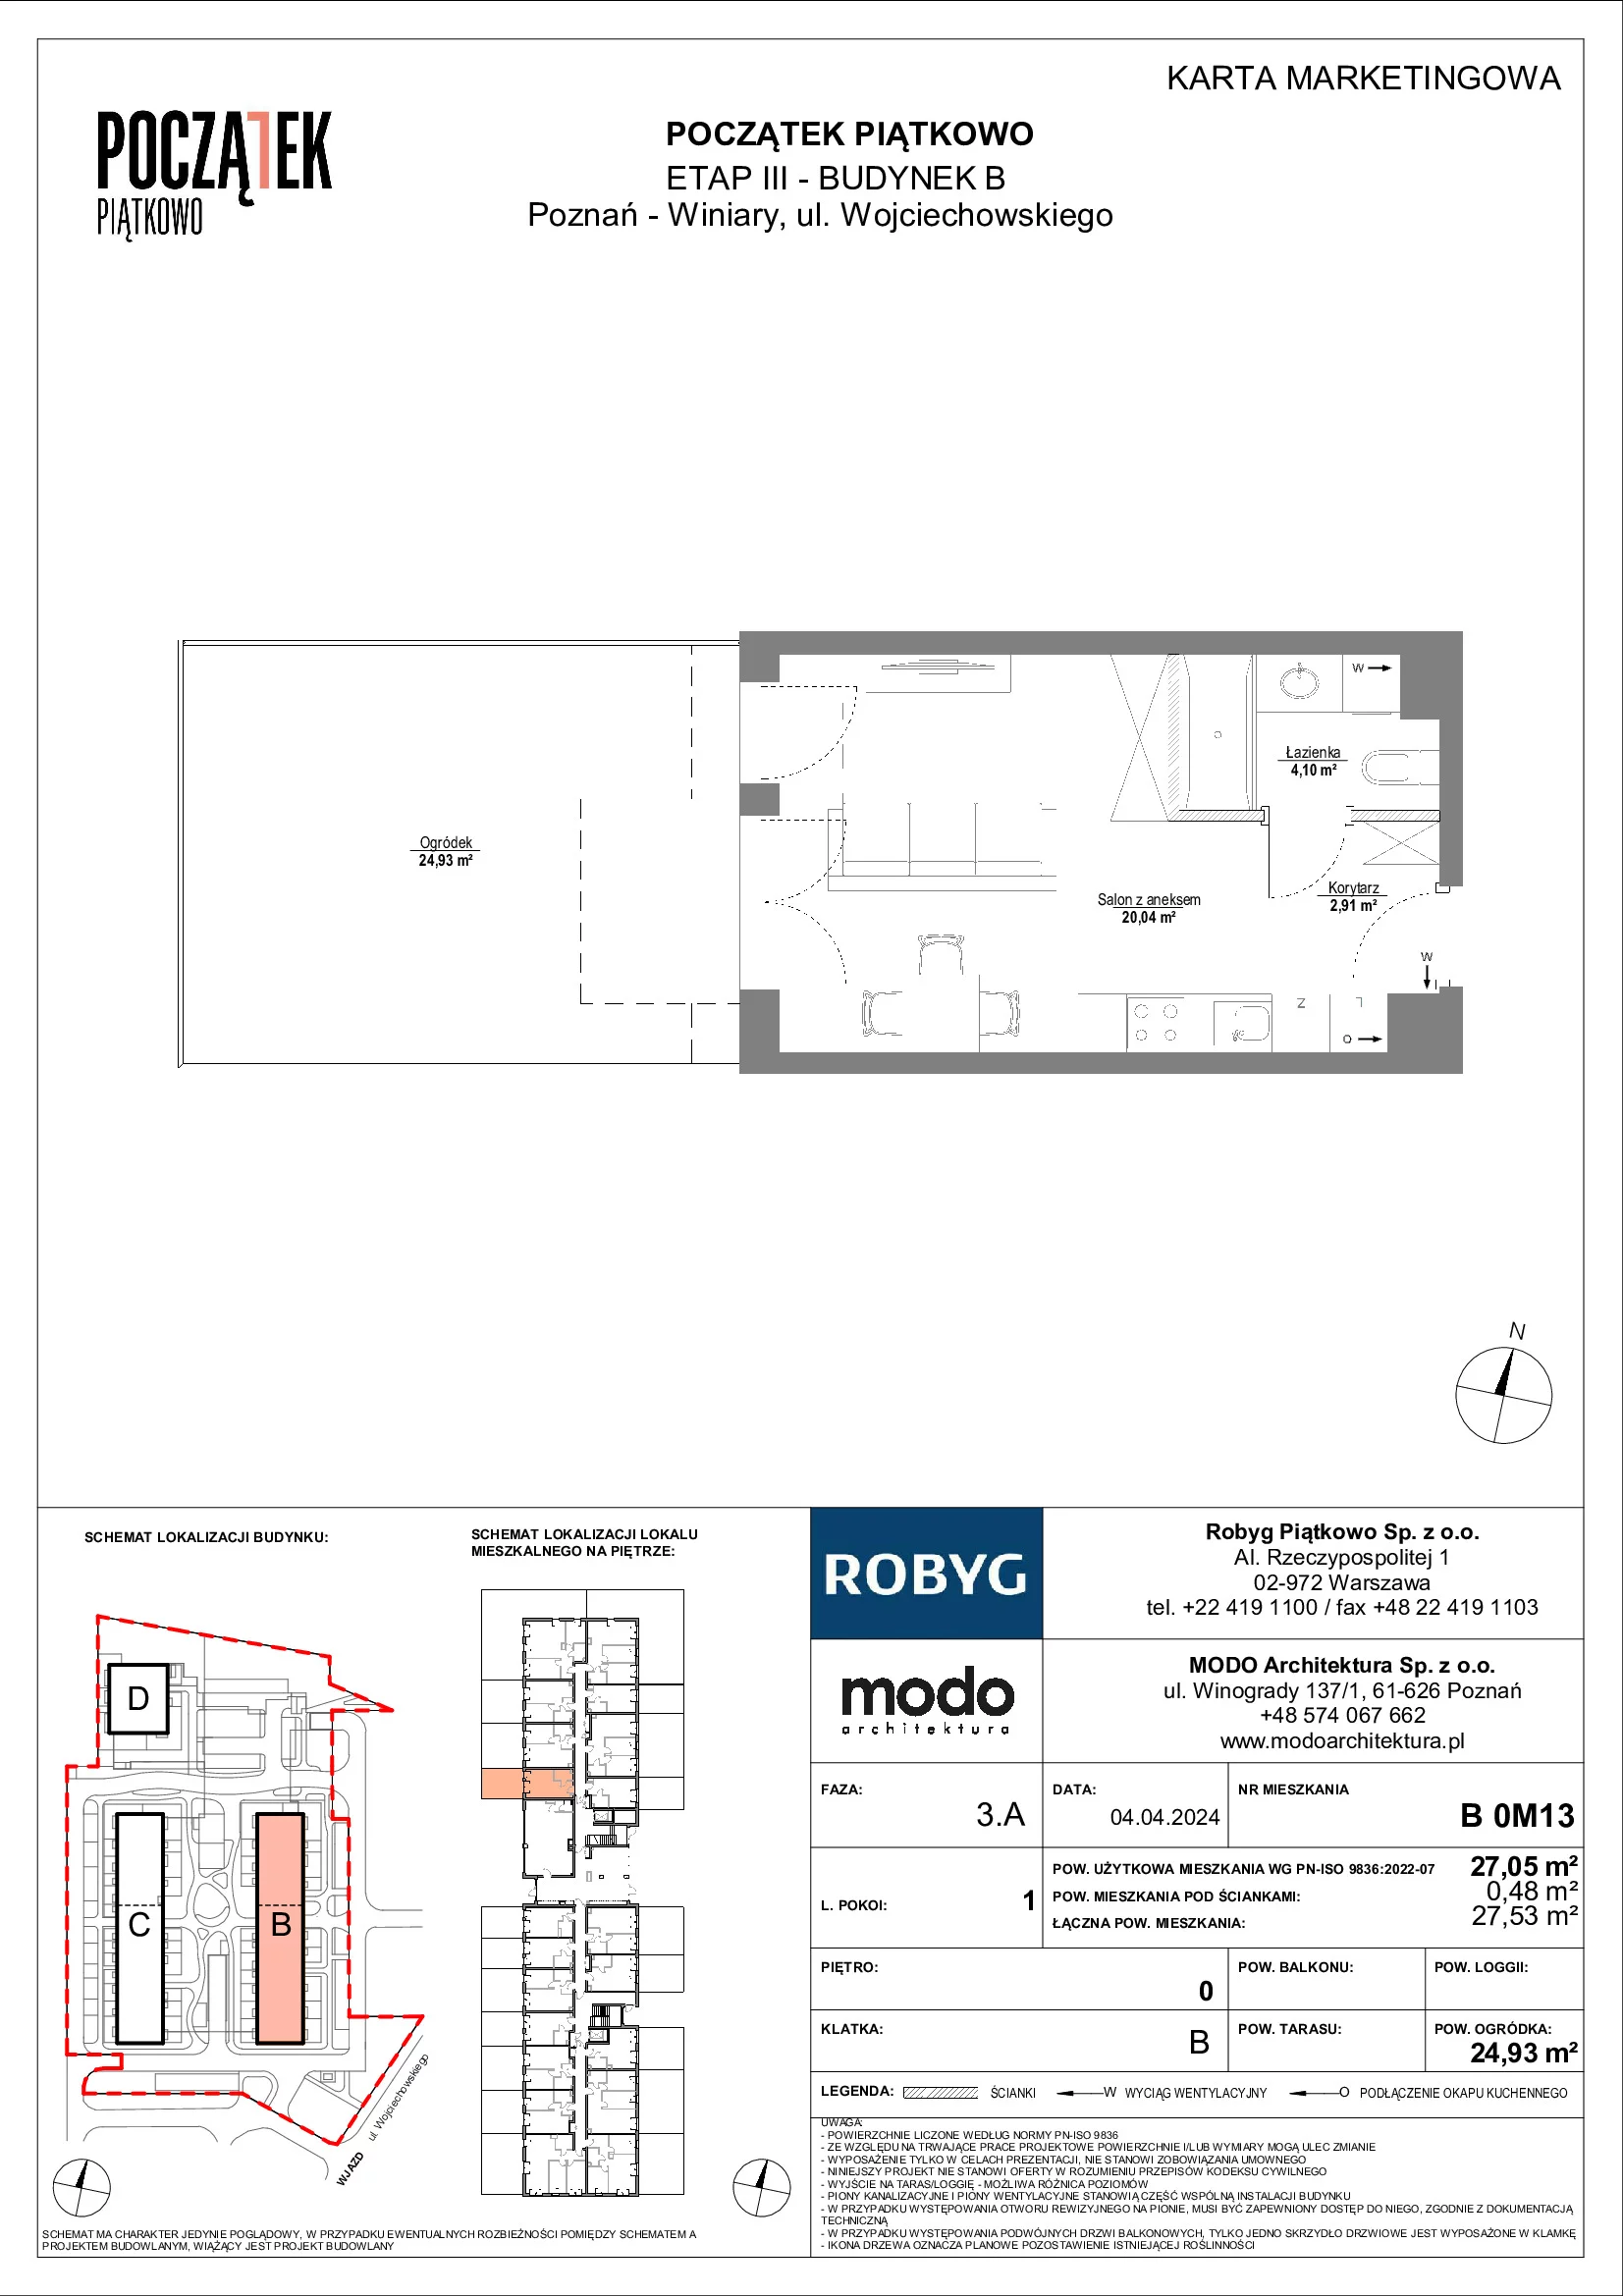 Mieszkanie 27,05 m², parter, oferta nr B.0M13, Początek Piątkowo, Poznań, Piątkowo, ul. Wojciechowskiego